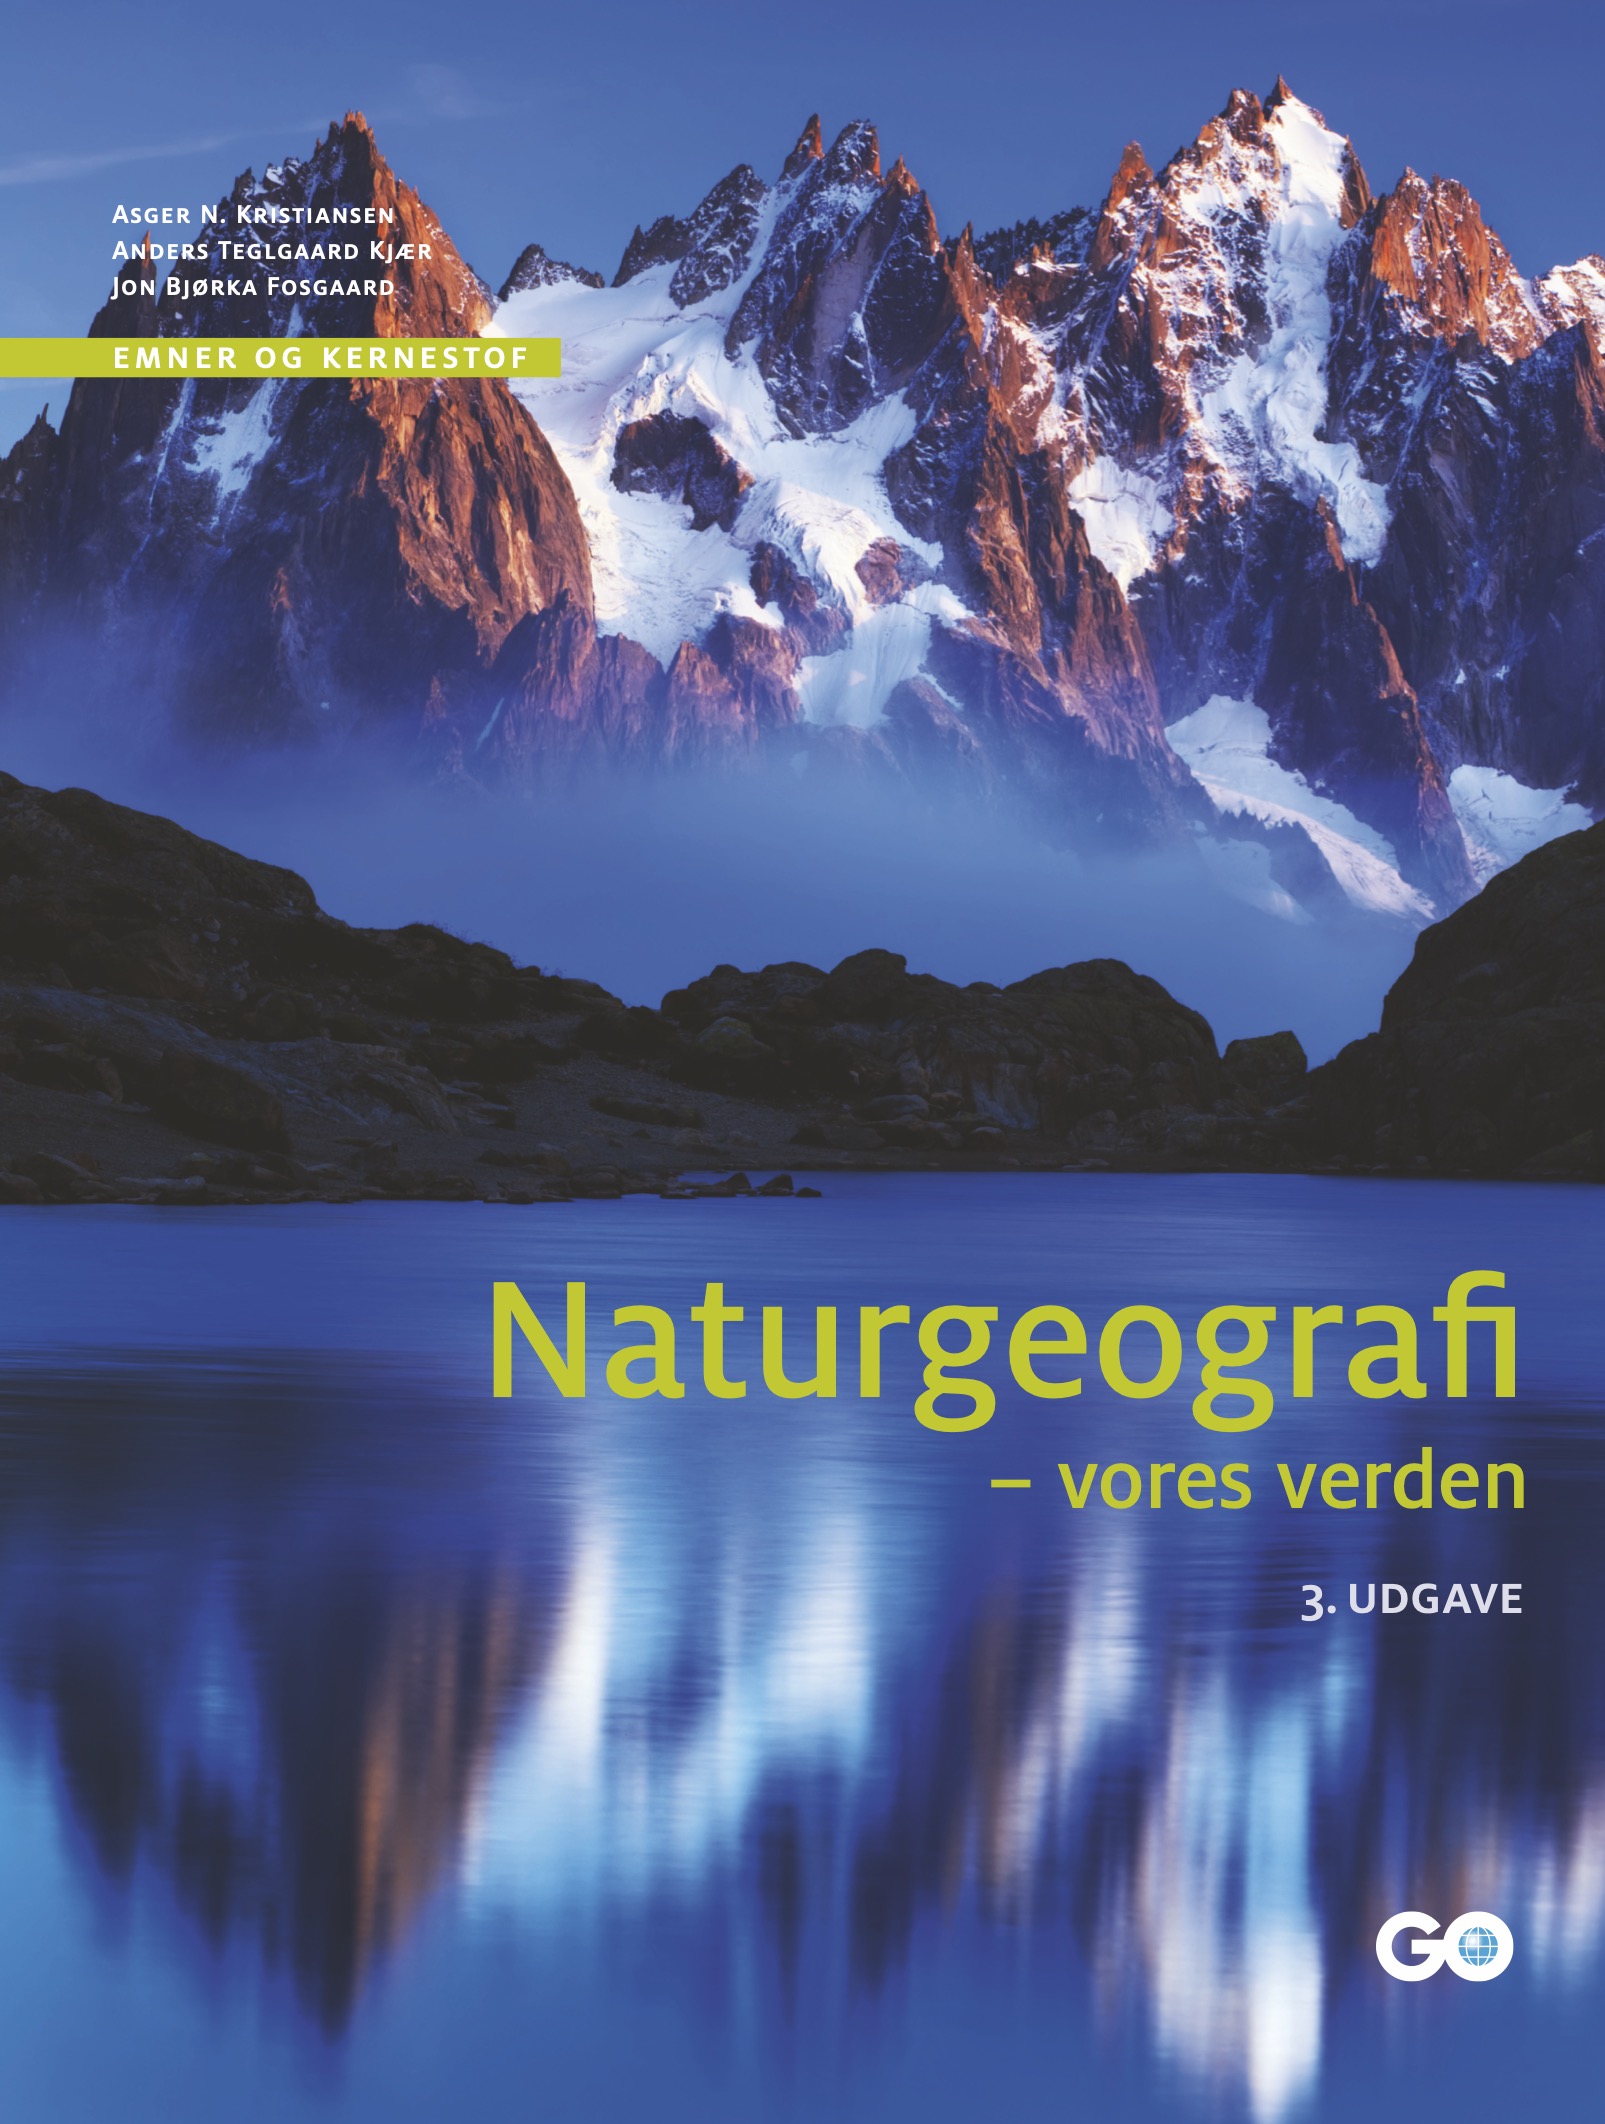 Forside af Naturgeograf - vores verden 3. udgave